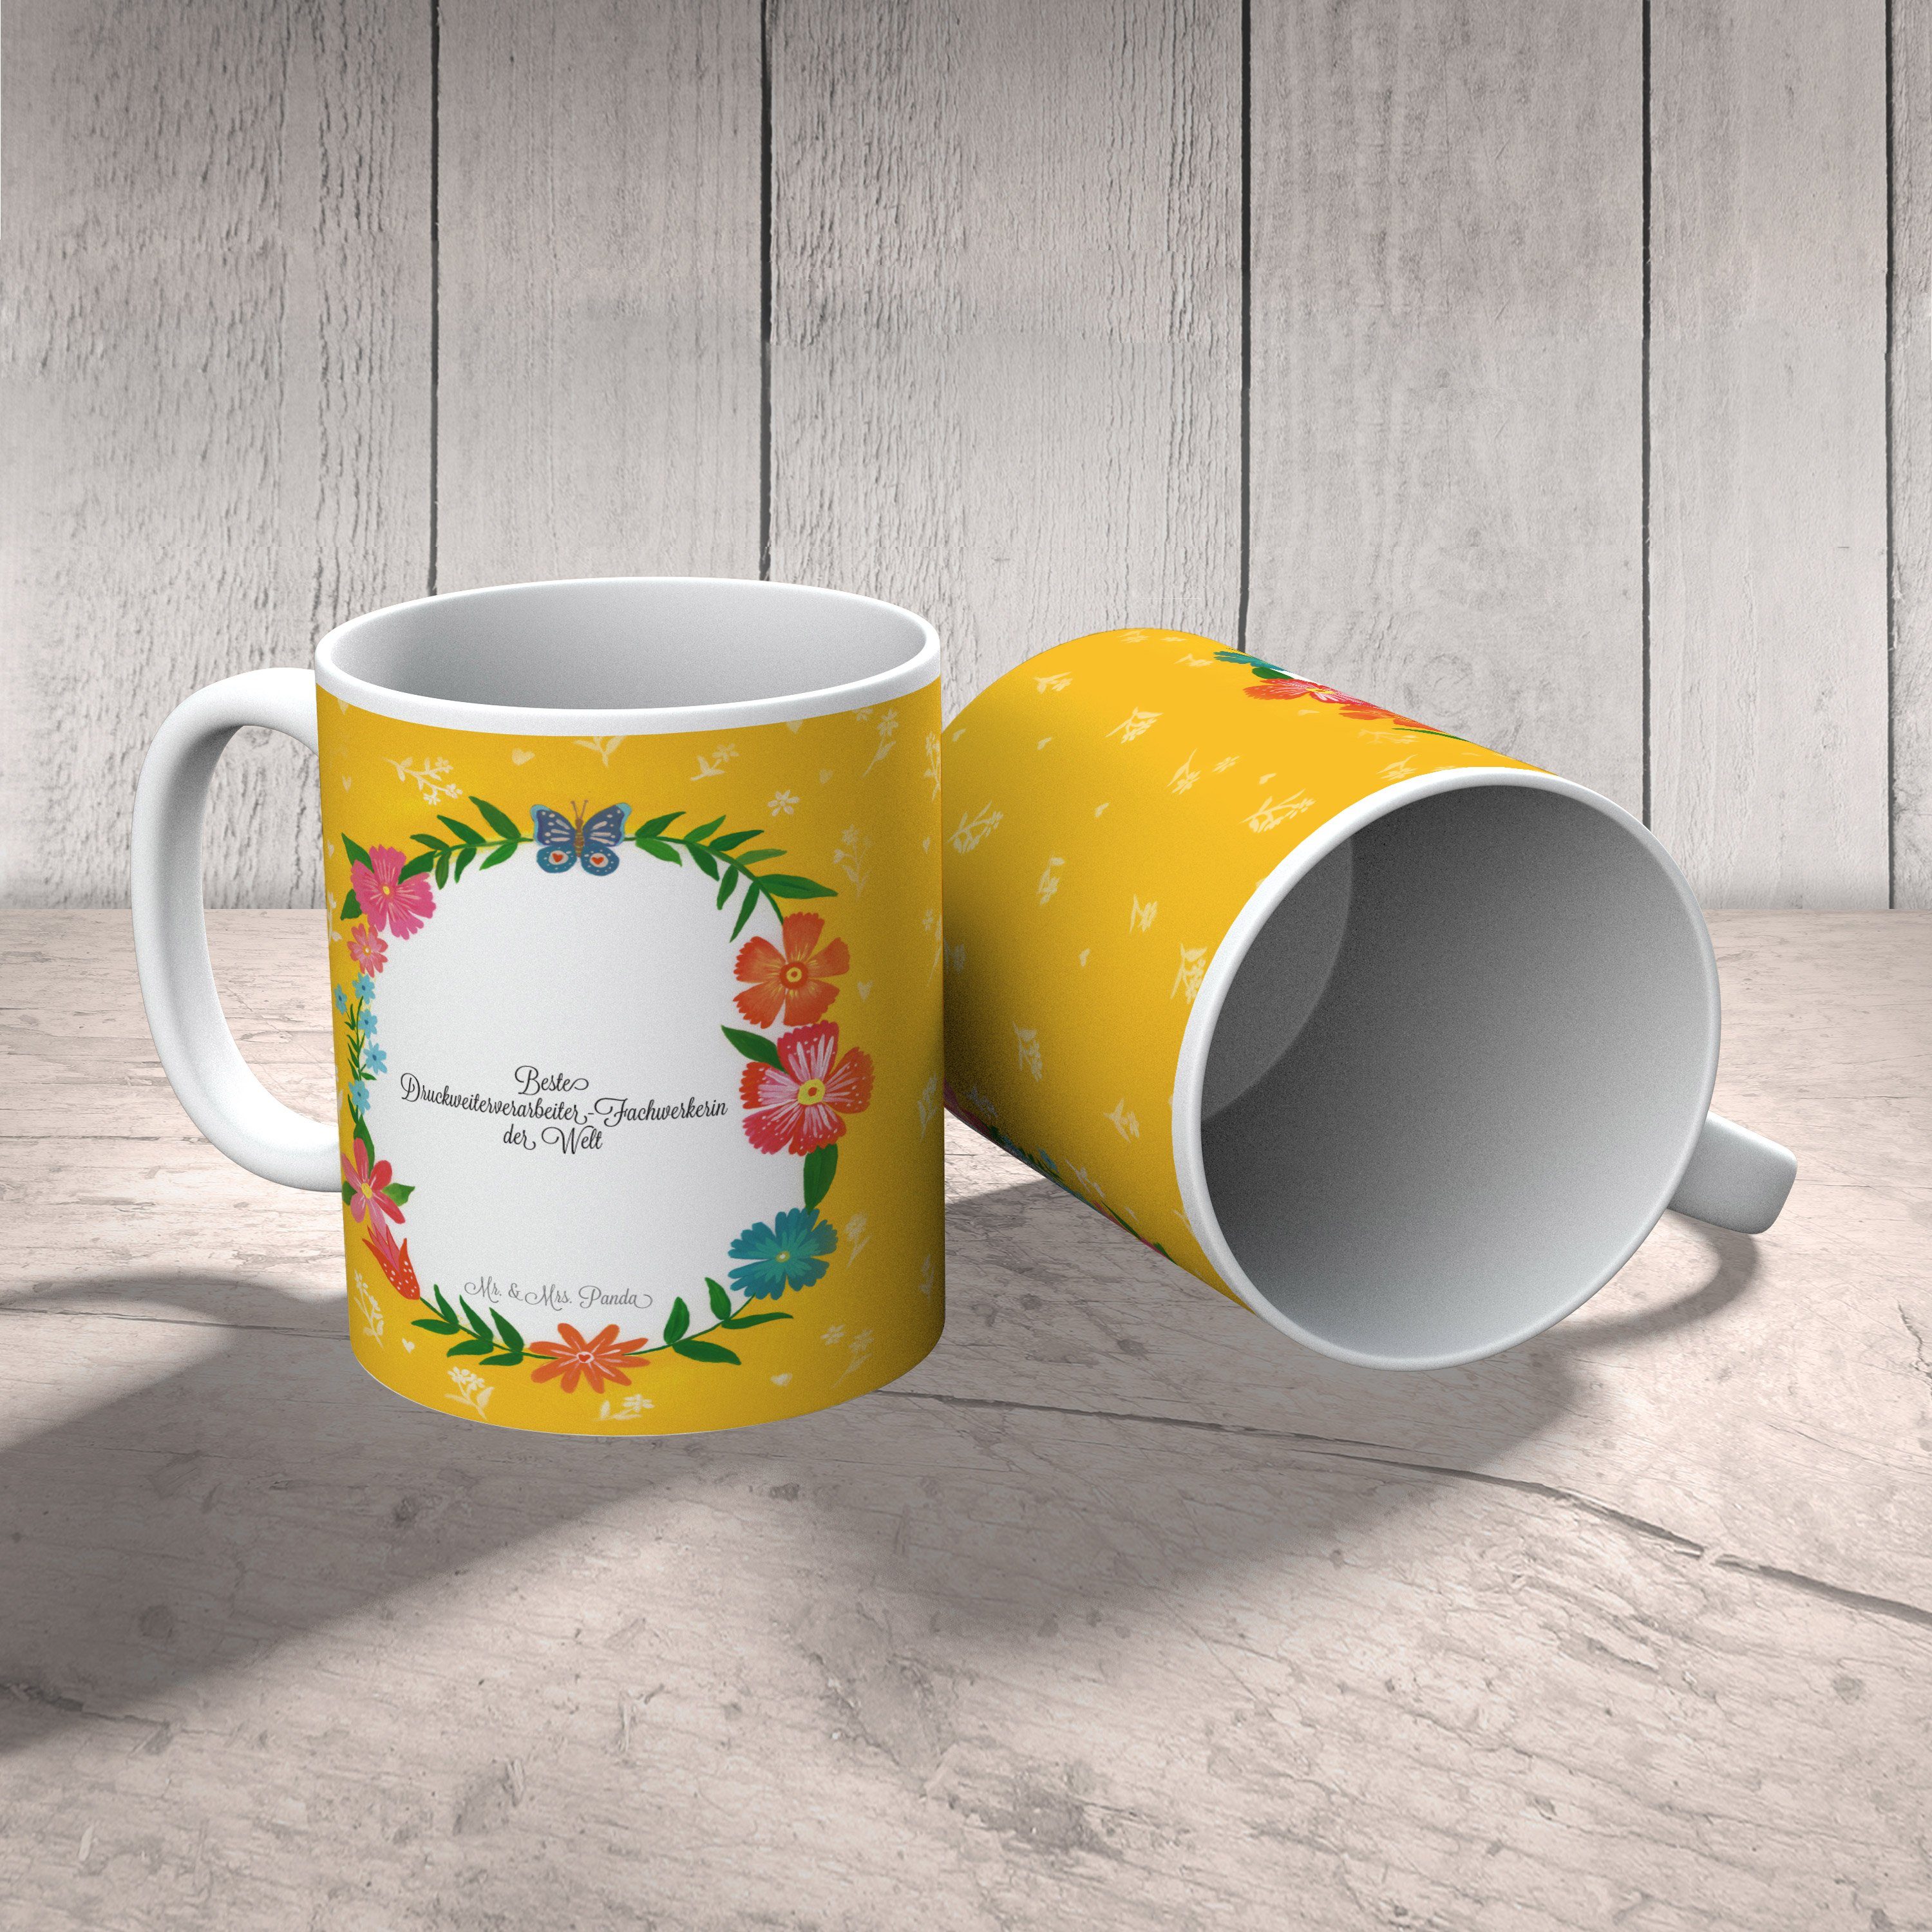 Mr. & Mrs. Panda Tasse Geschenk, Druckweiterverarbeiter-Fachwerkerin - Kaffeebecher, Keramik Rente